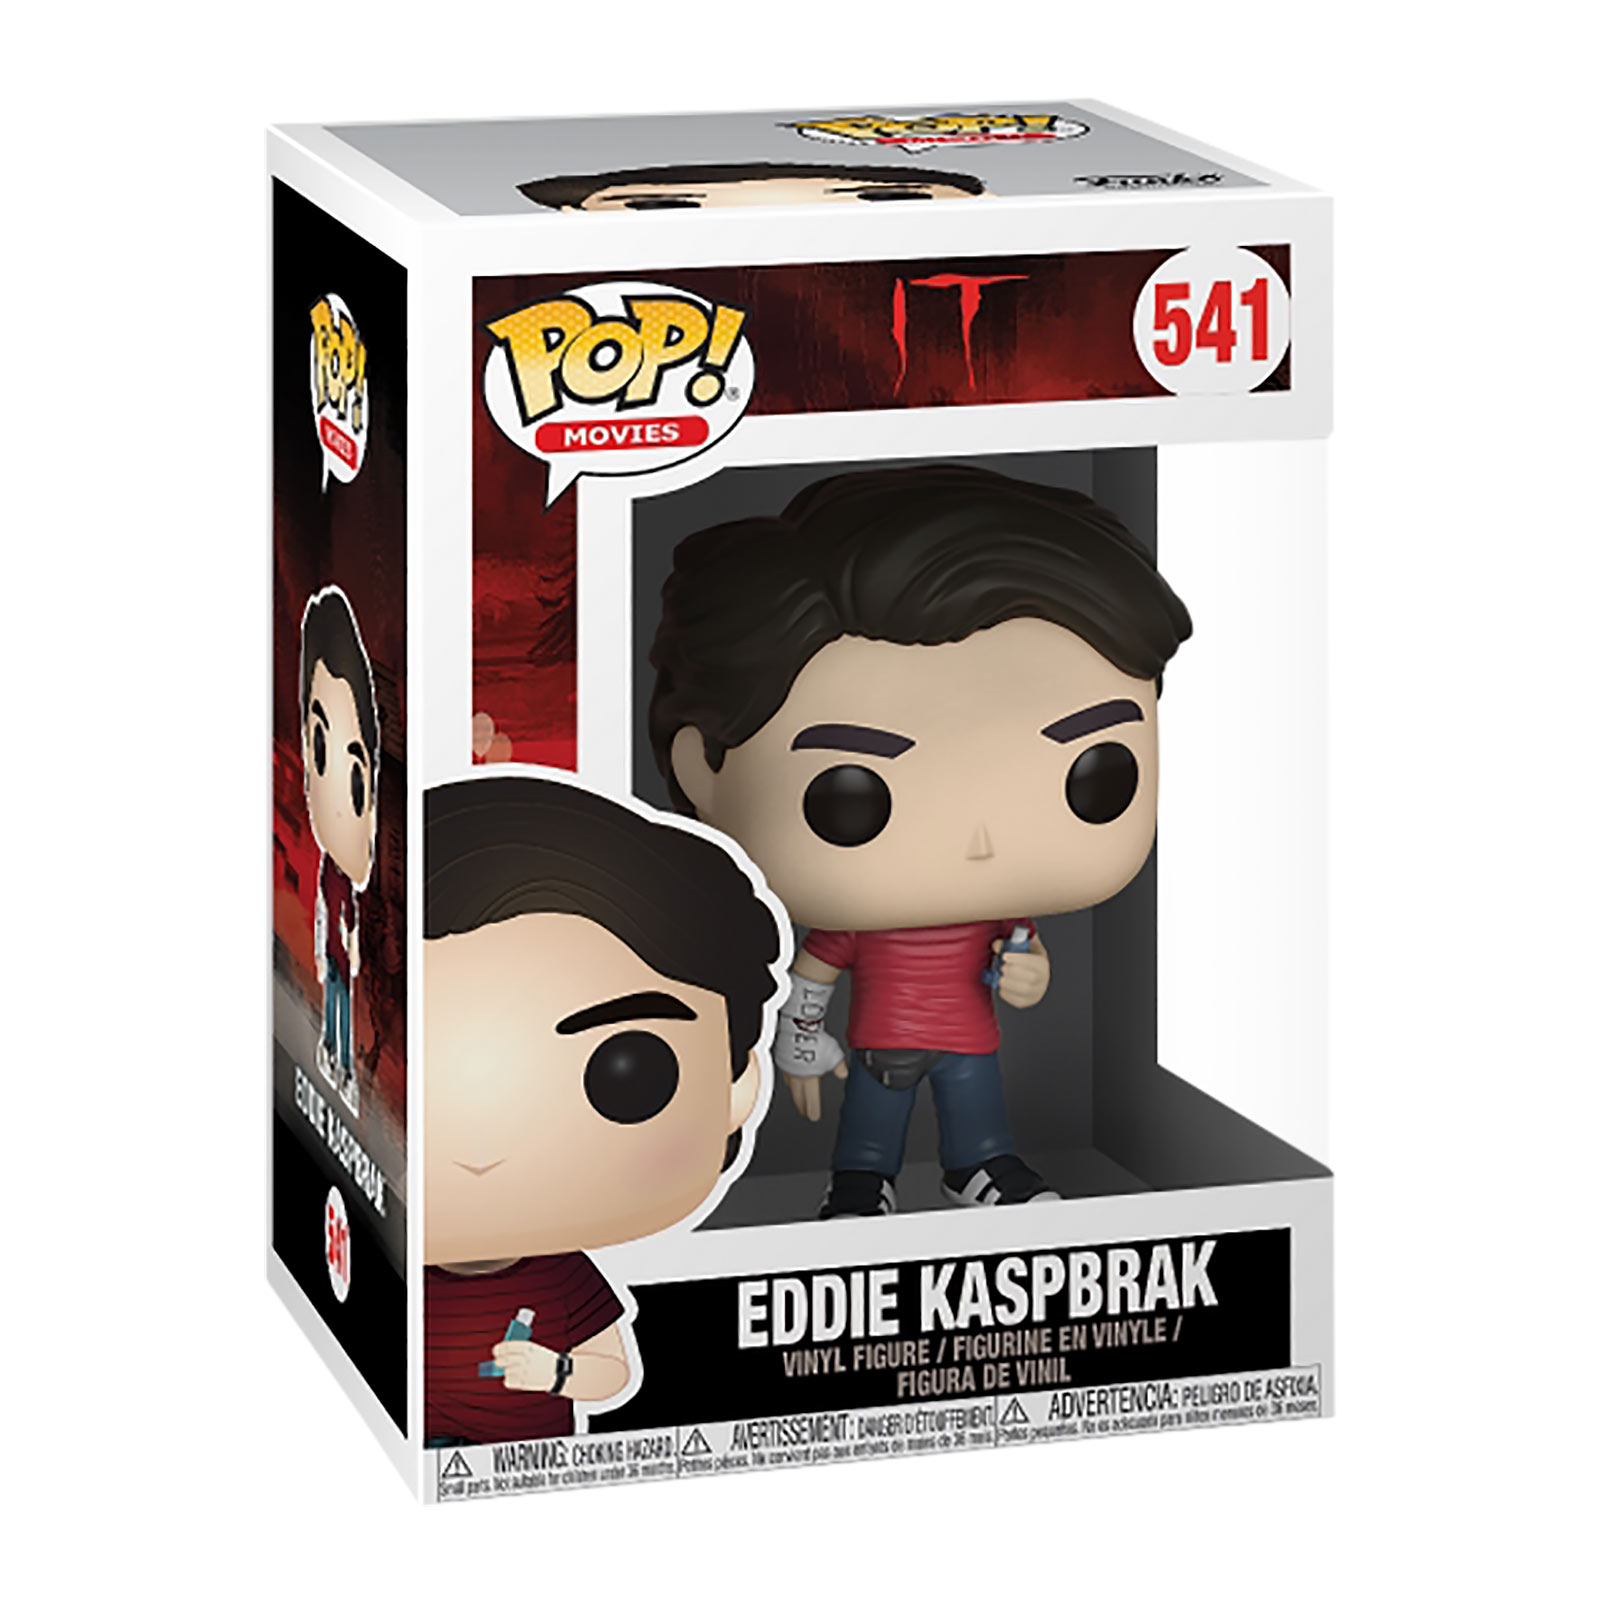 Stephen King's ES - Eddie Funko Pop Figurine